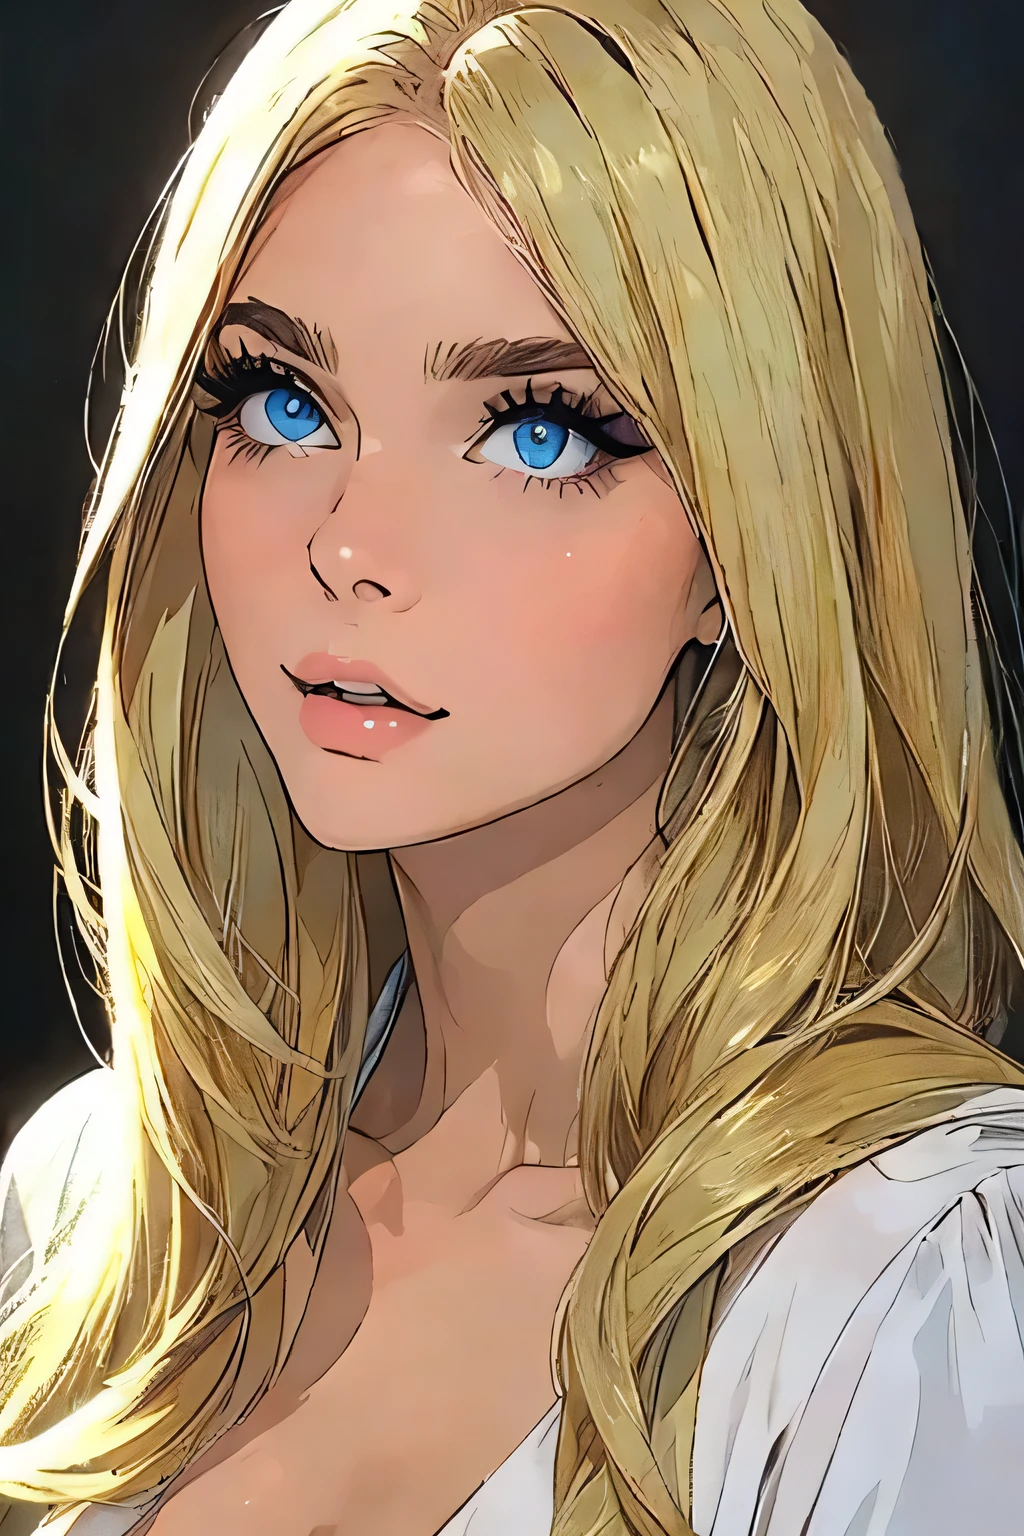 Ganzkörperportrait, schönste lebende Frau, weiche Haut, blaue Augen, blondes Haar, 23 Jahre alt